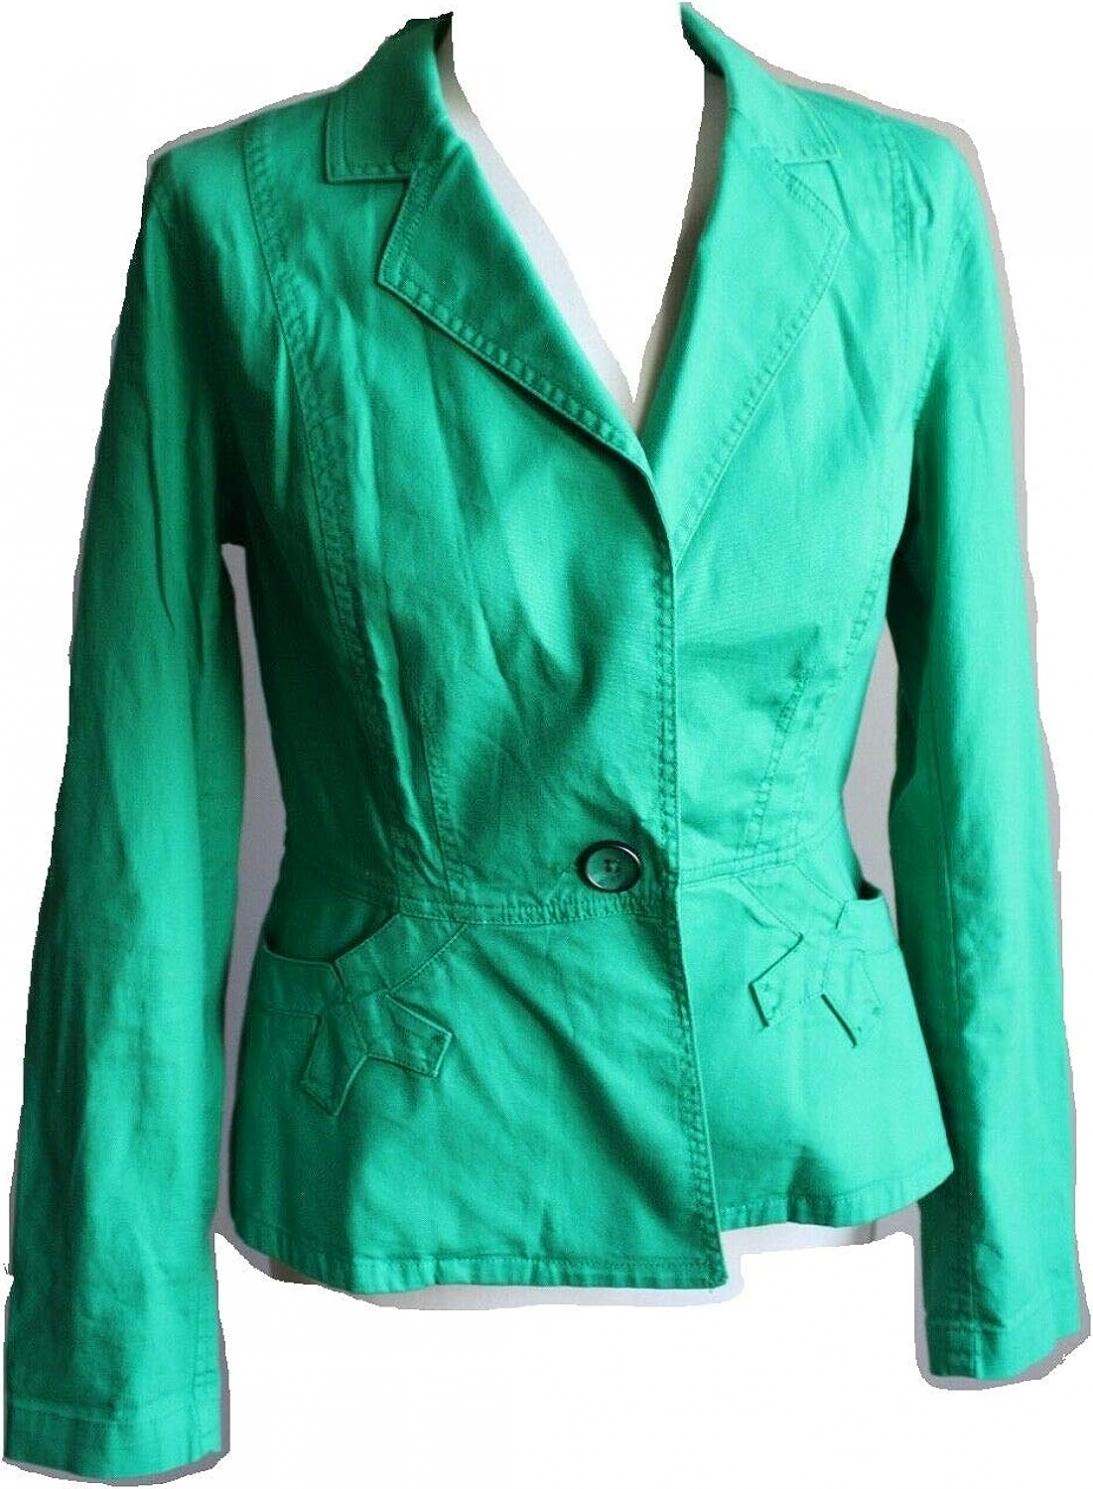 cabi Verde Jacket #5097 Green Blazer